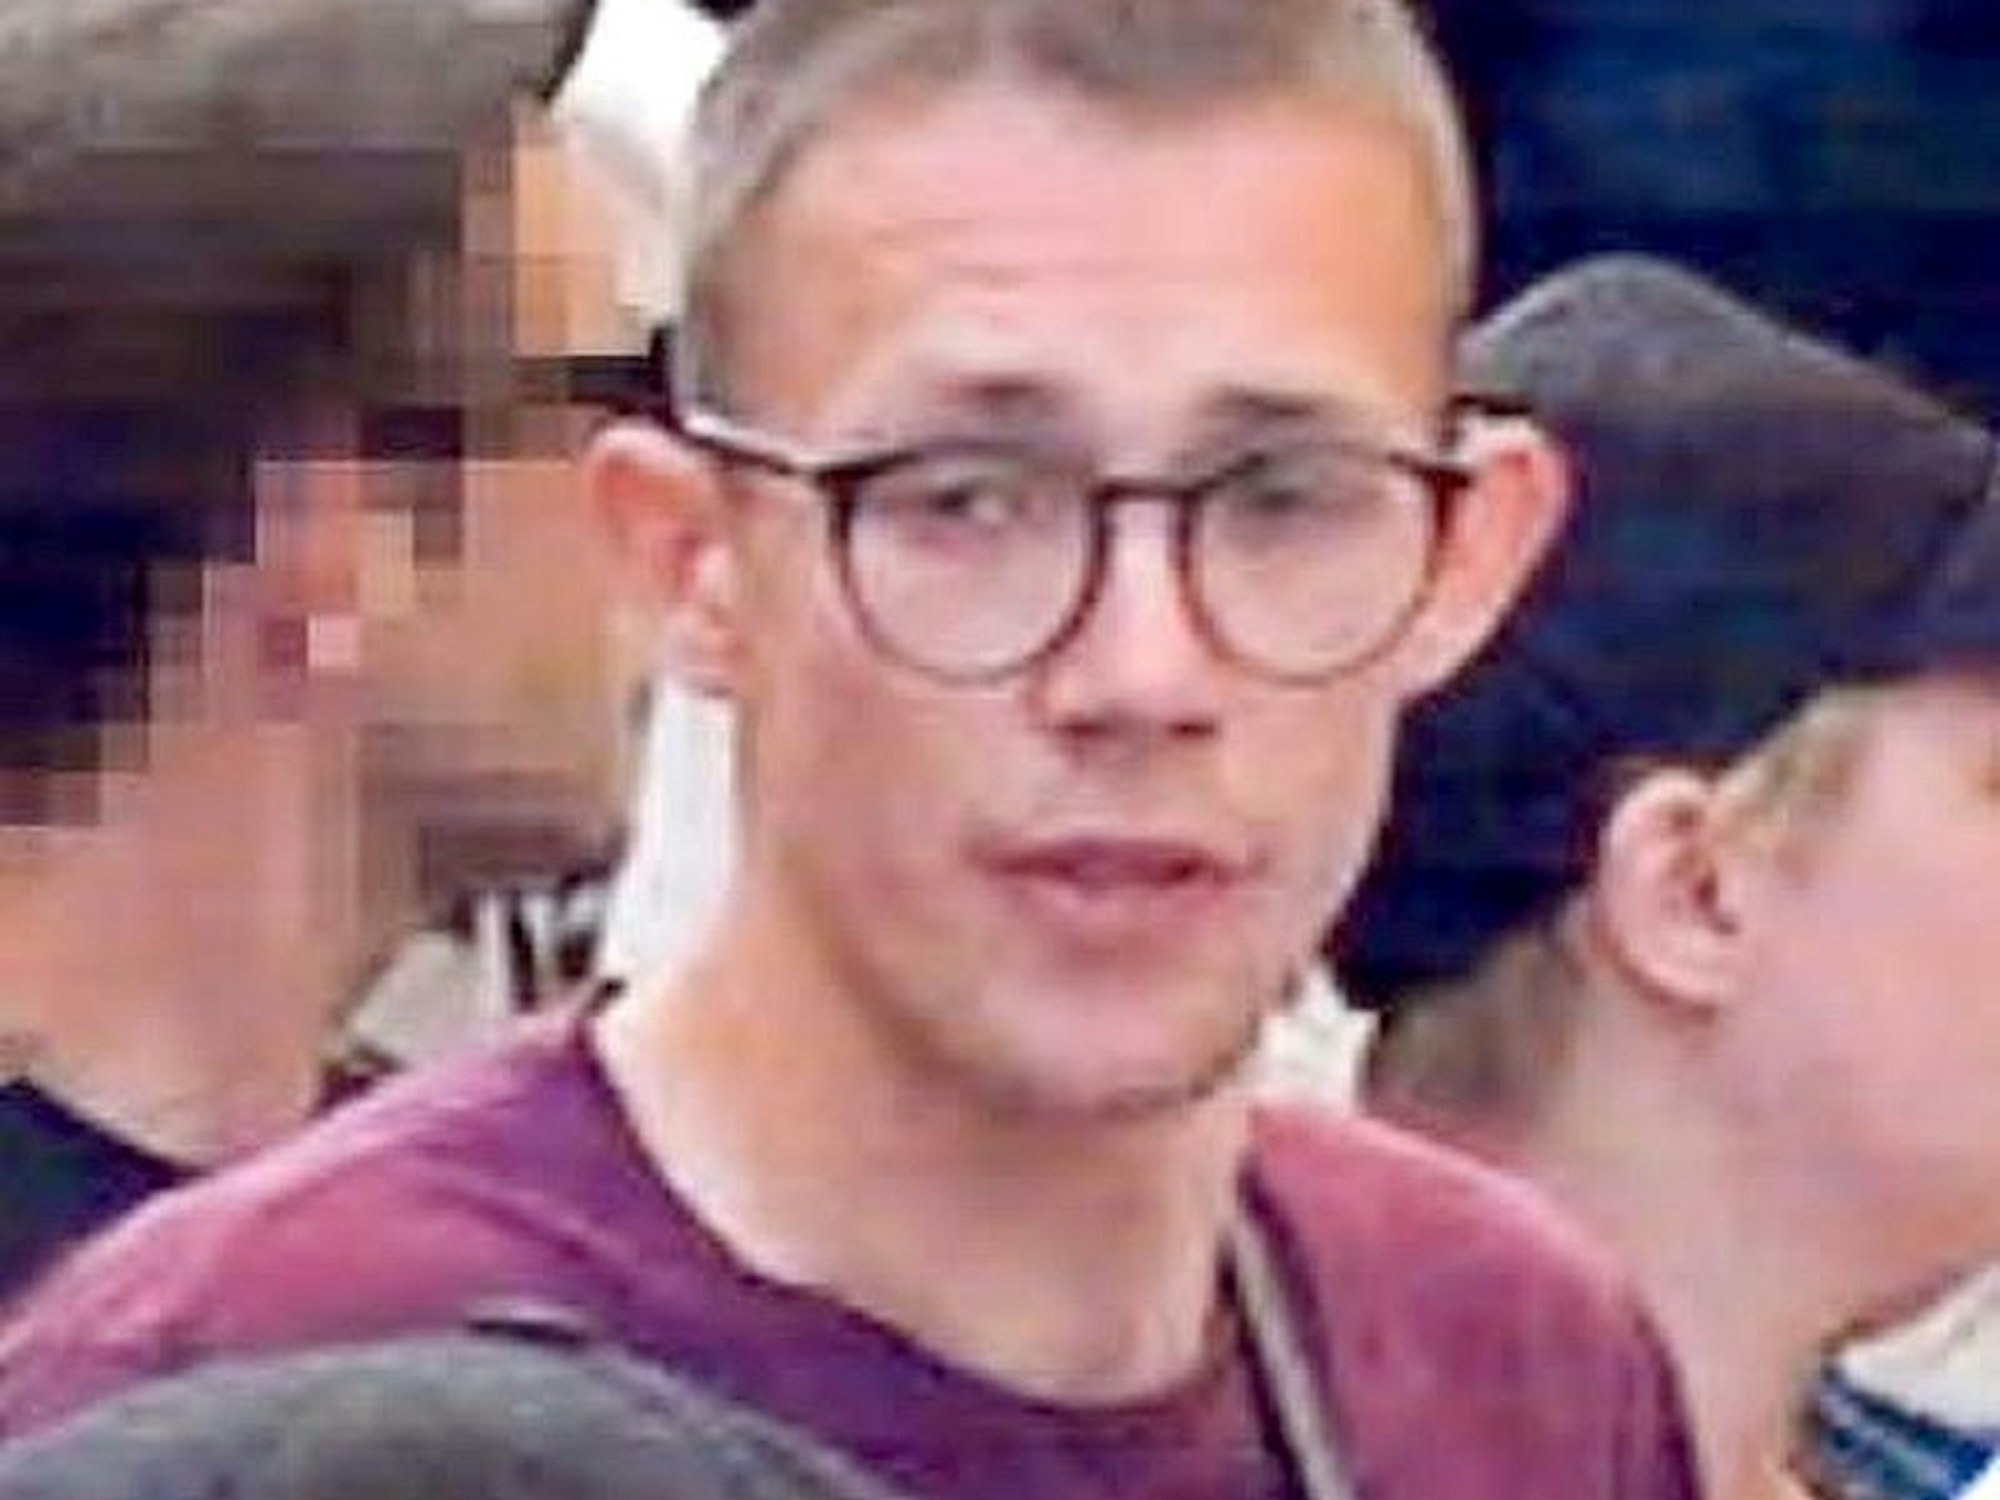 Junger Mann mit Brille und rotem Shirt auf einem Fahndungsfoto.